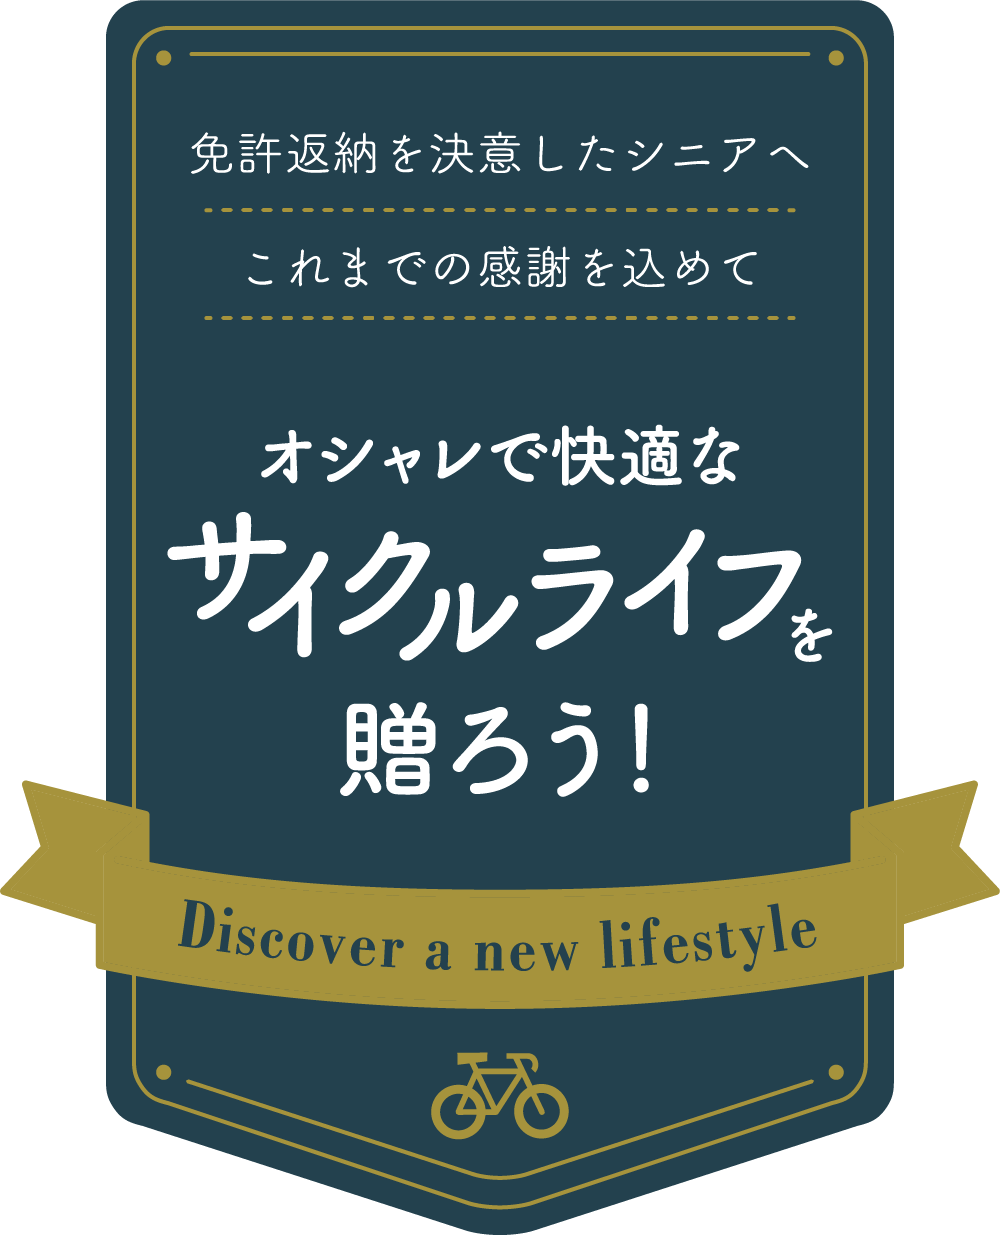 免許返納を決意したシニアへこれまでの感謝を込めて　オシャレで快適なサイクルライフを贈ろう！　Discover a new lifestyle